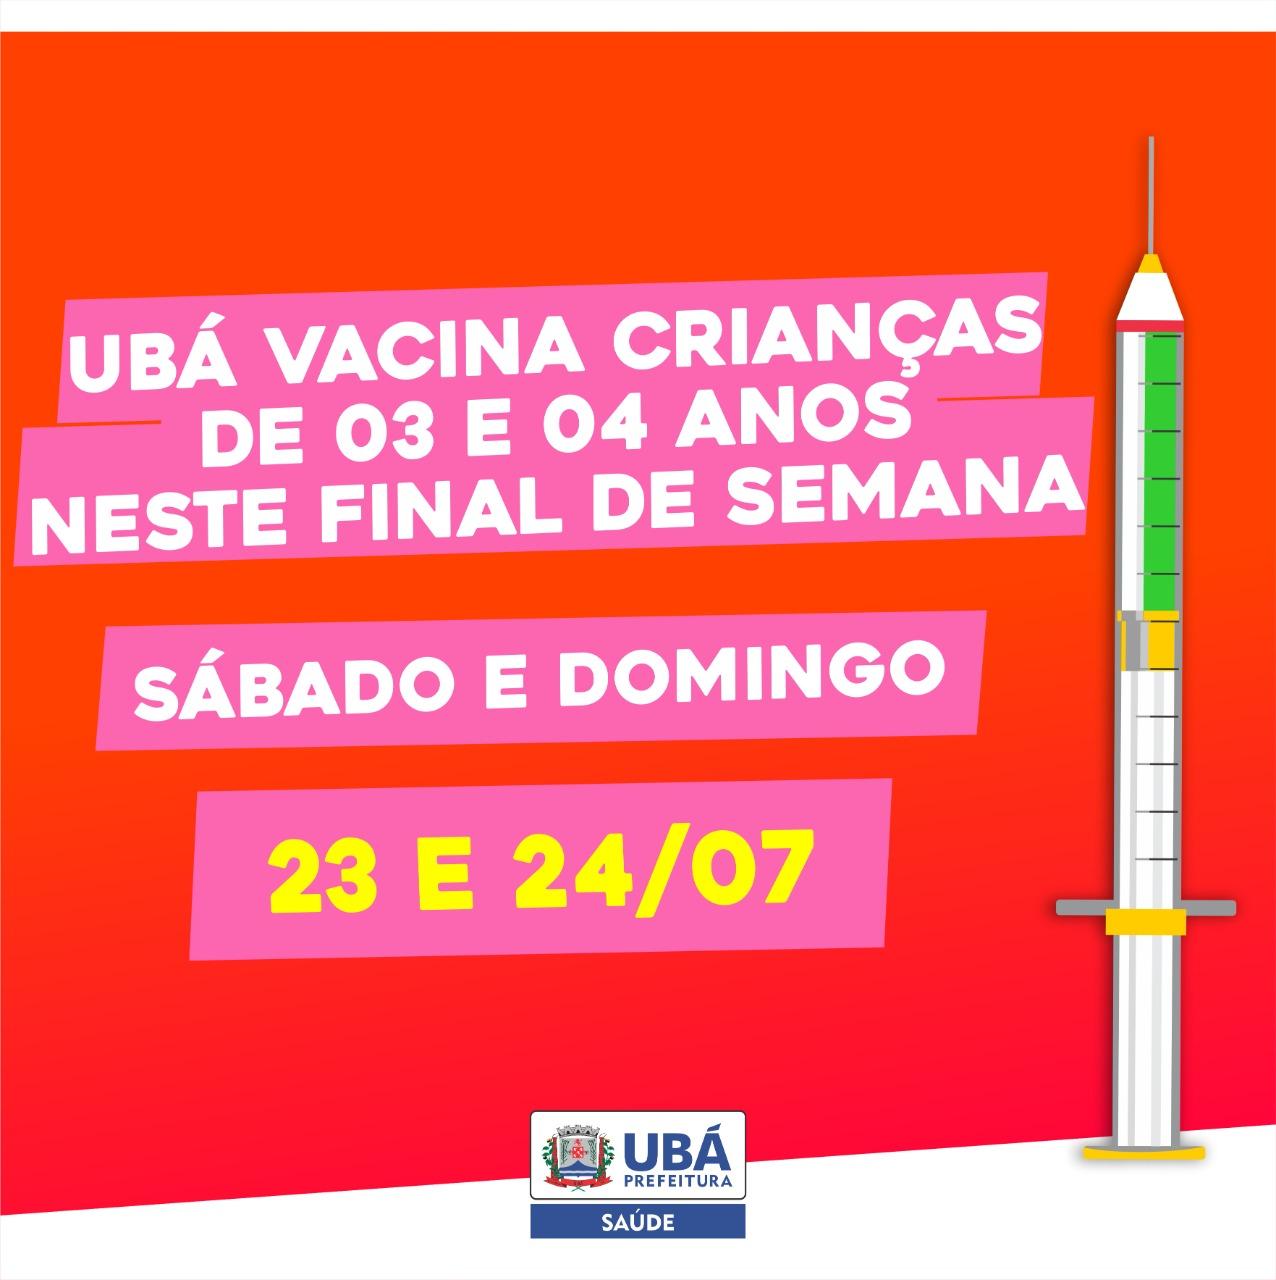 Crianças a partir de 03 anos serão vacinadas neste final de semana em Ubá.